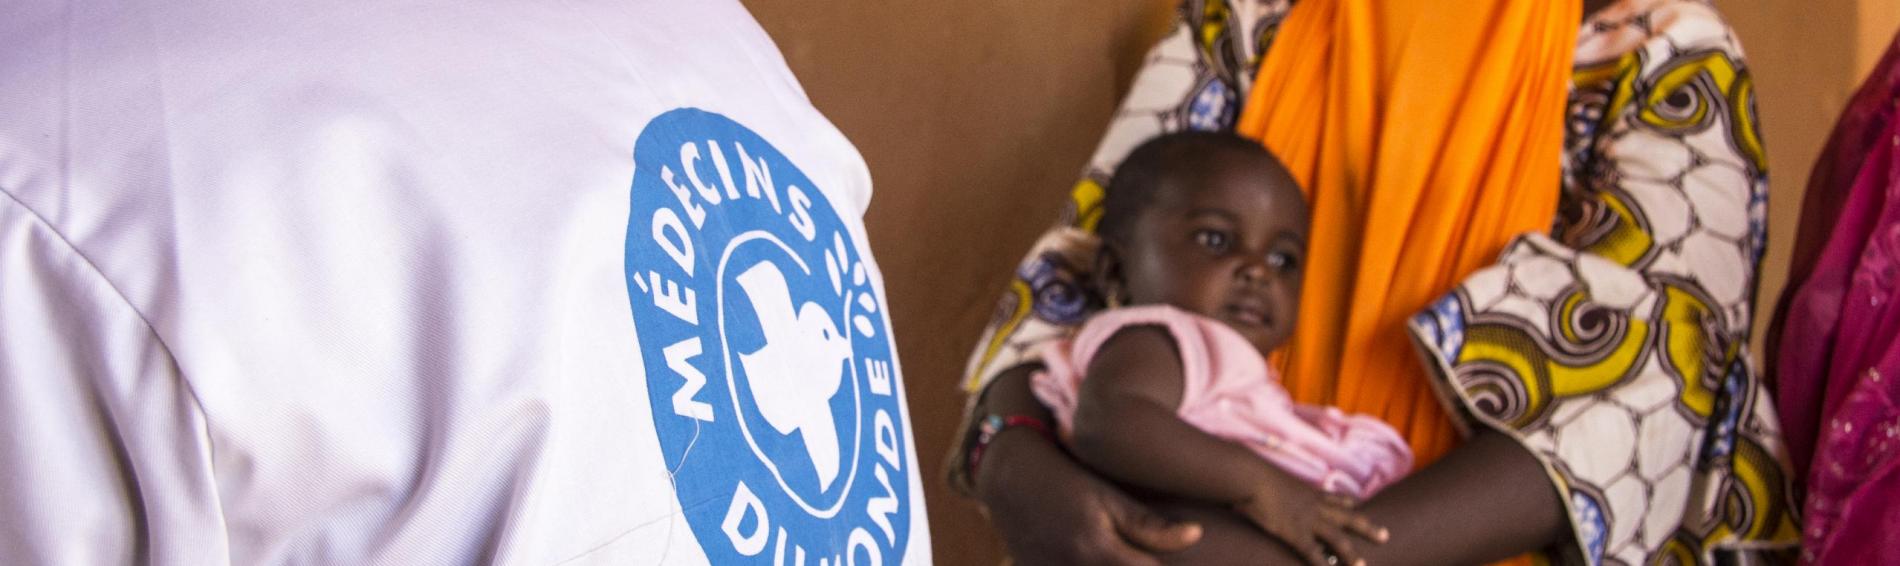 Een Malinese baby in de armen van haar moeder. Op de voorgrond één van onze artsen met een jas waarop het logo staat.